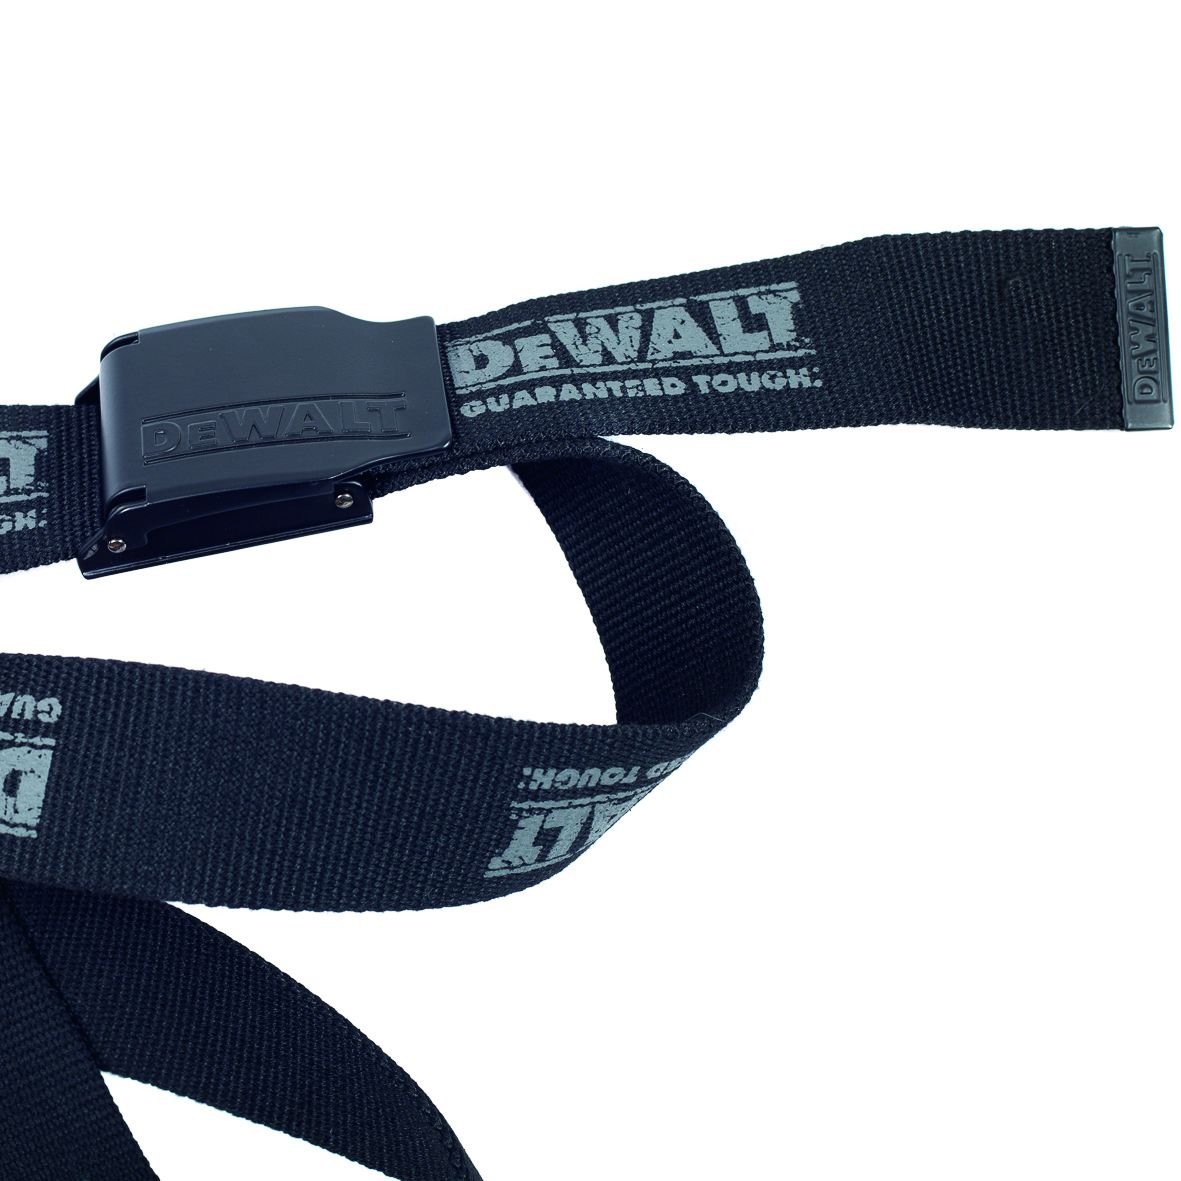 DeWalt Pro Belt black polyester adjustable woven work belt